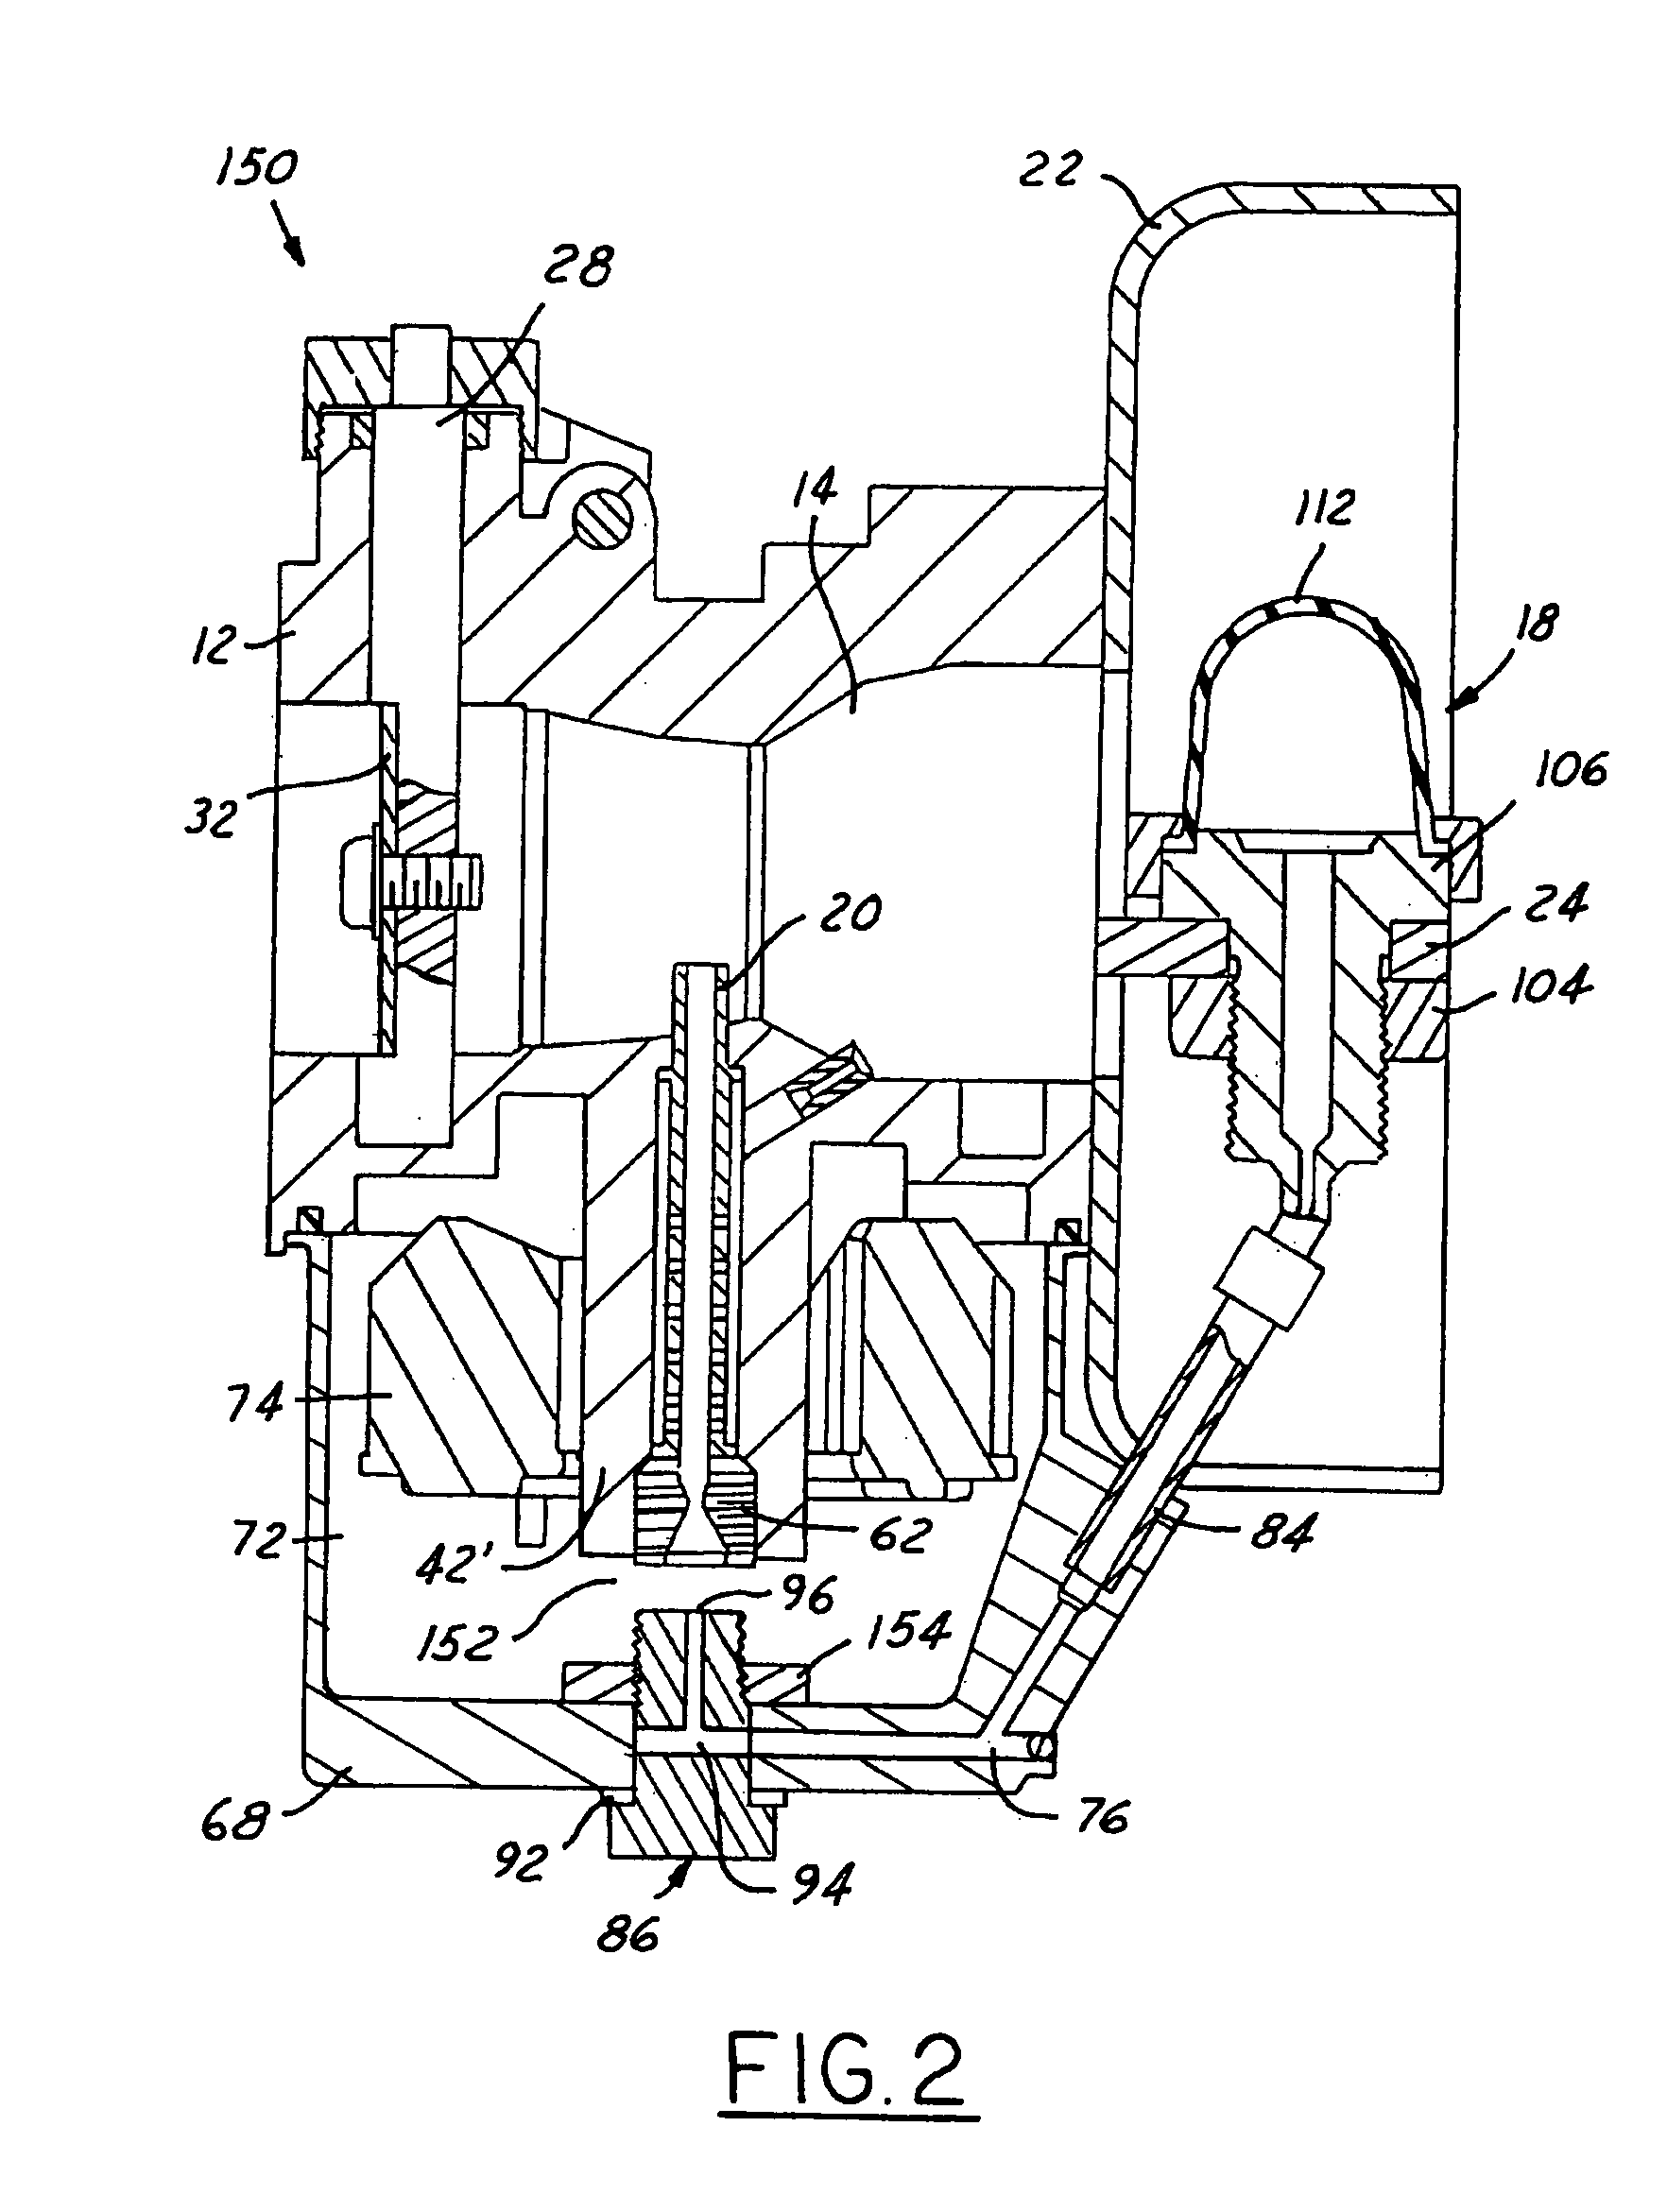 Priming system for a float bowl carburetor